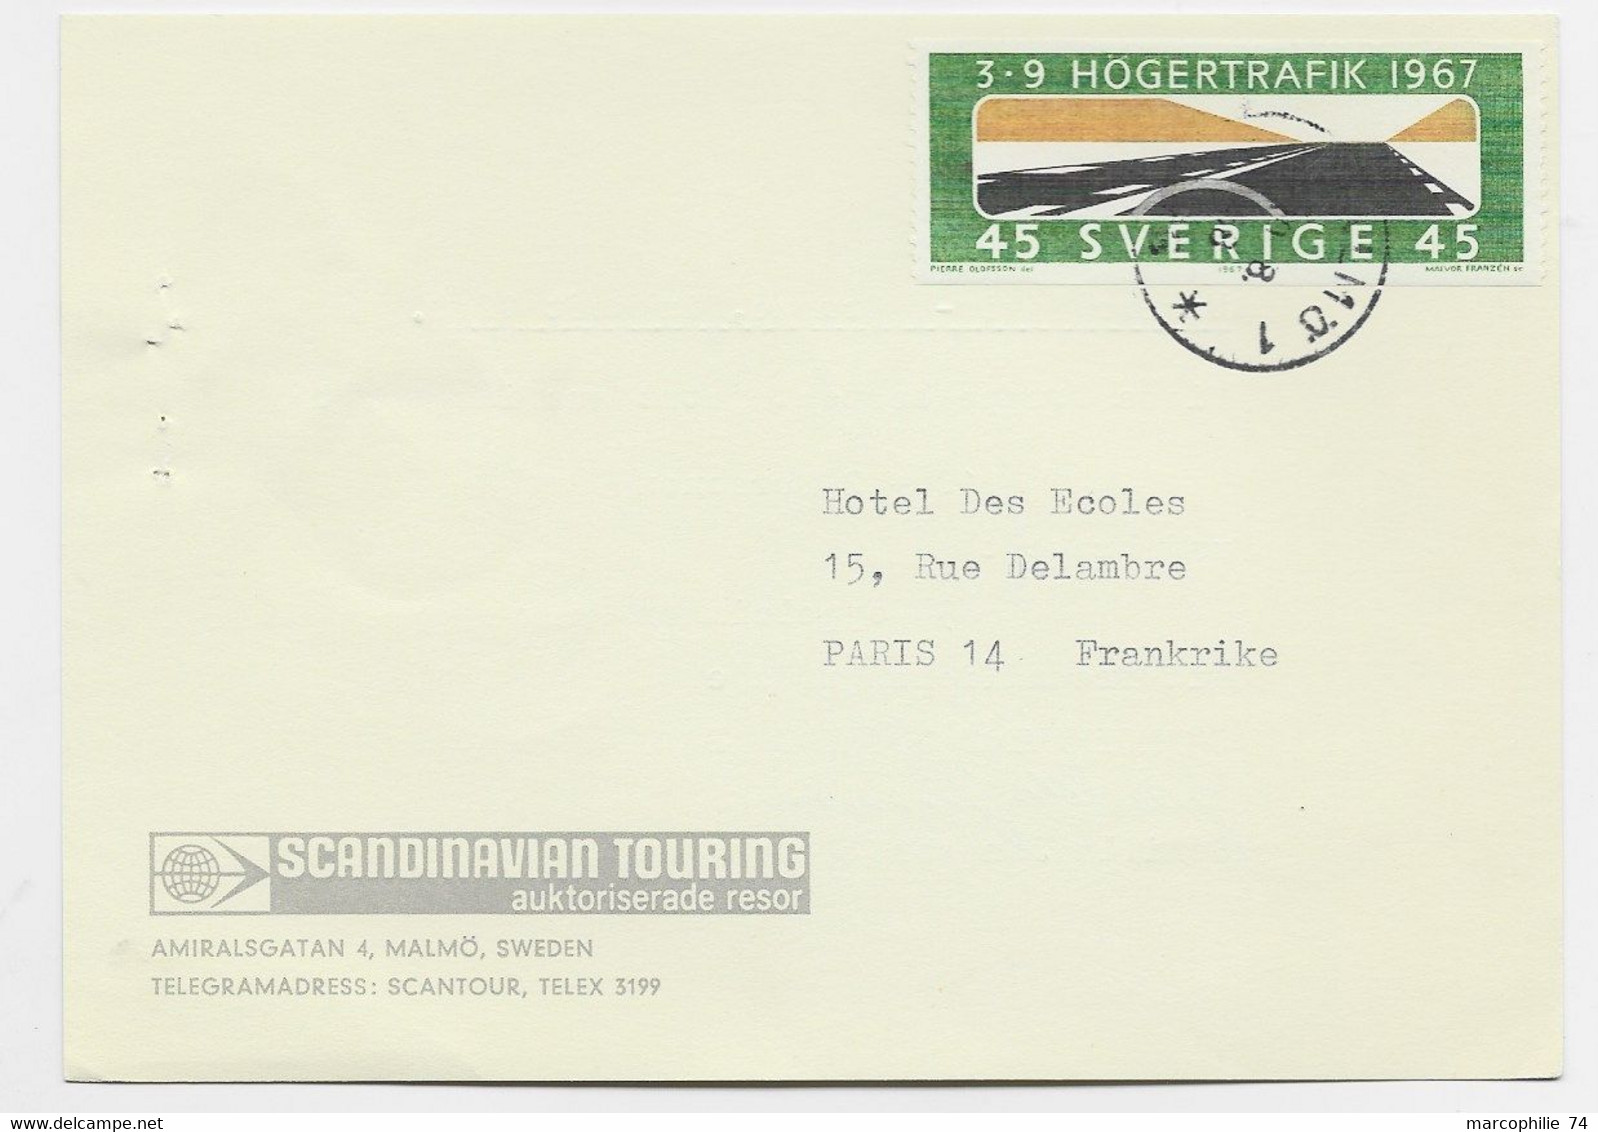 SVERIGE 45 SOLO CARD SCANDINAVIAN TOURING 1967 O FRANCE - Briefe U. Dokumente